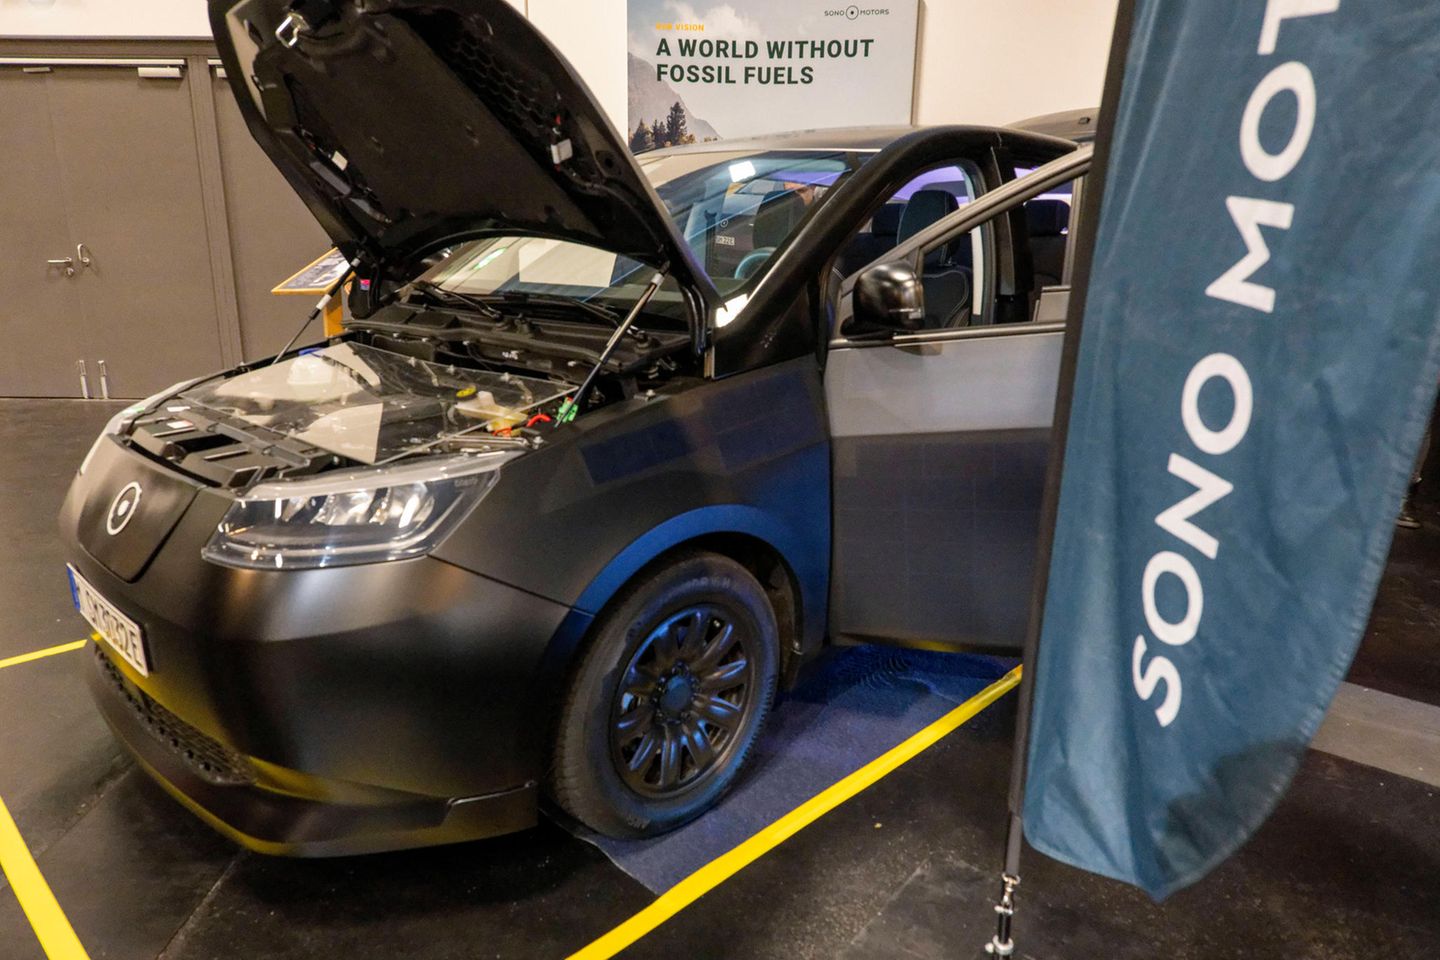 So sollte das Solarauto von Sono Motors aussehen. Das Unternehmen musste die Pläne aufgeben und steht nun ganz auf der Kippe